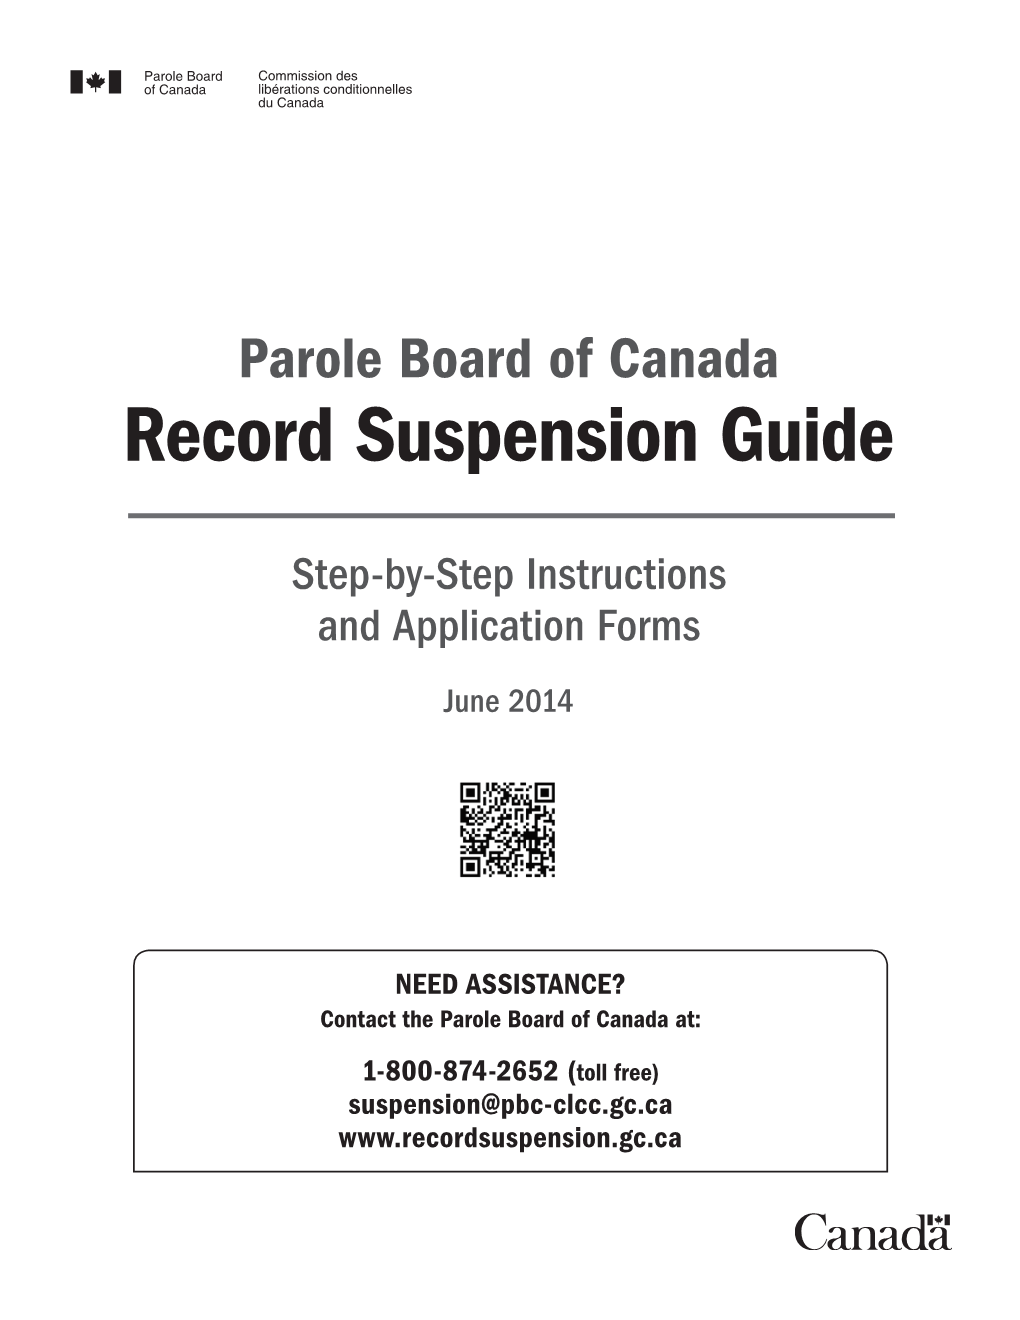 Record Suspension Guide